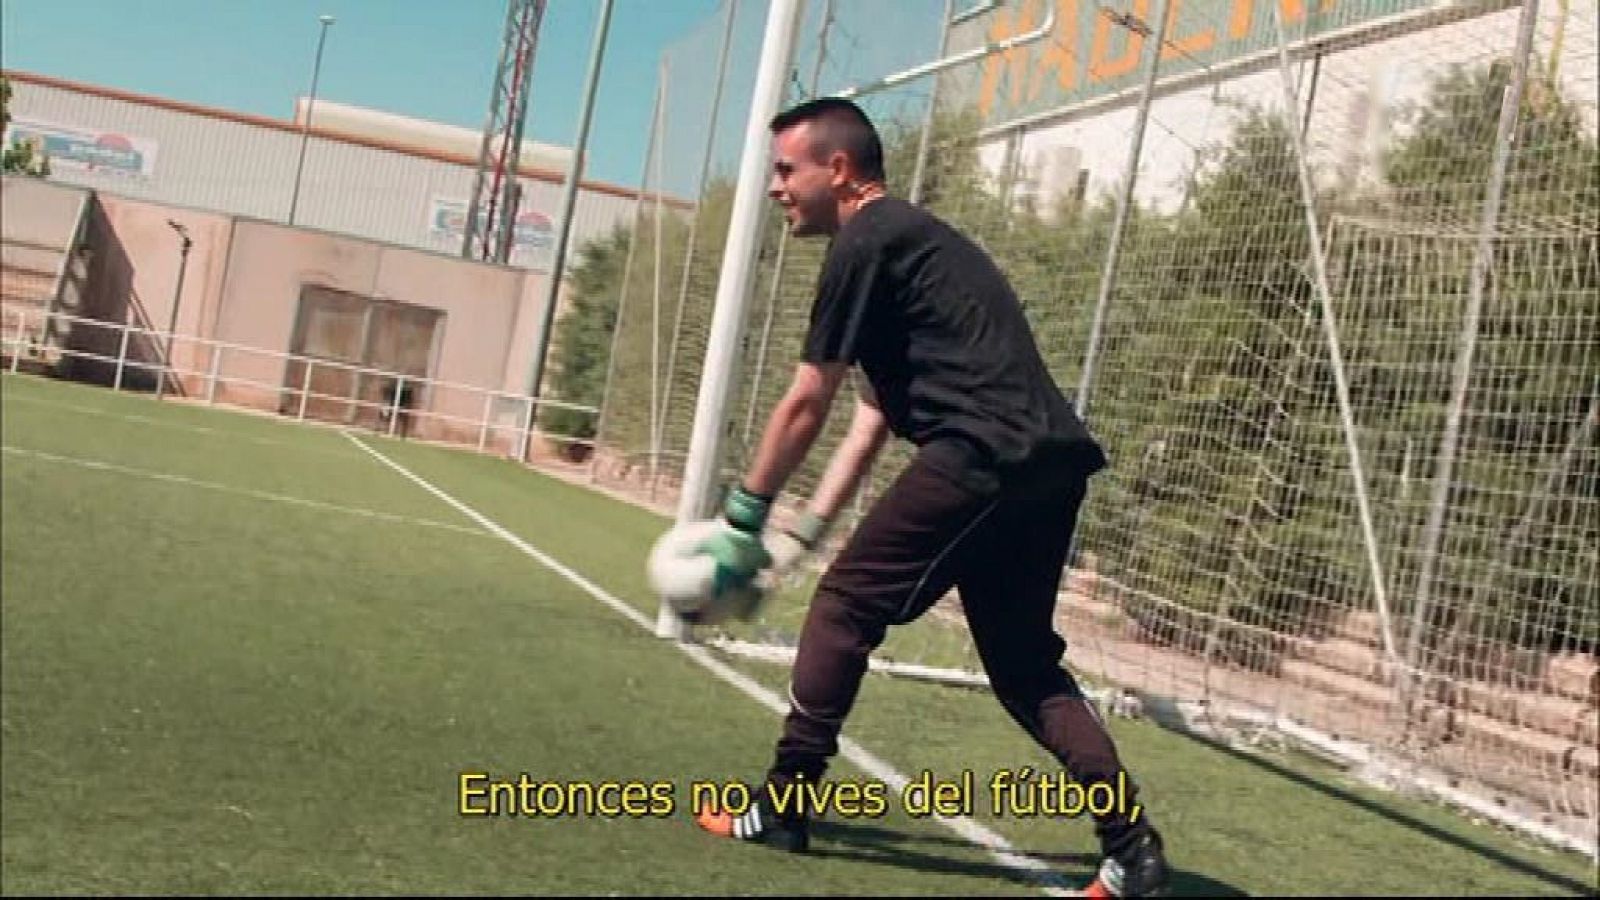 Jóvenes y deporte - Fútbol parálisis cerebral Antonio Jesús Domínguez